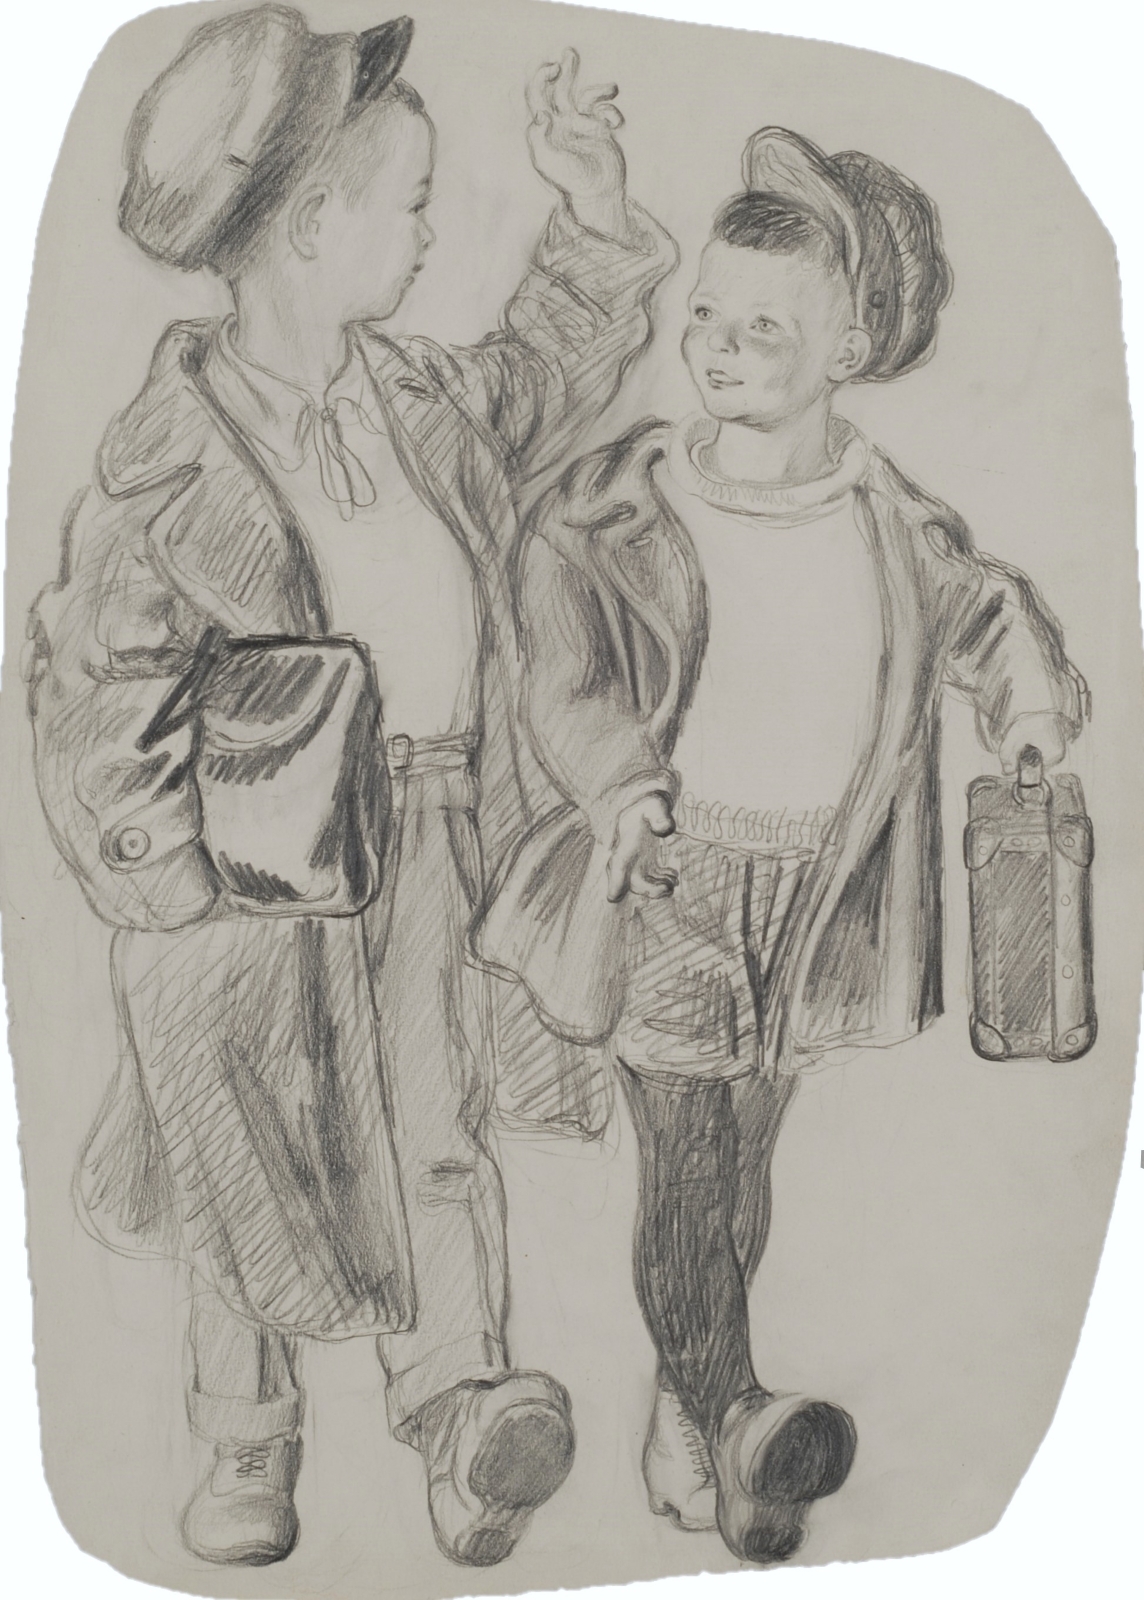 Иллюстрация к стихотворению С. Маршака «Веселый день» из книги «Школьные товарищи». 1936